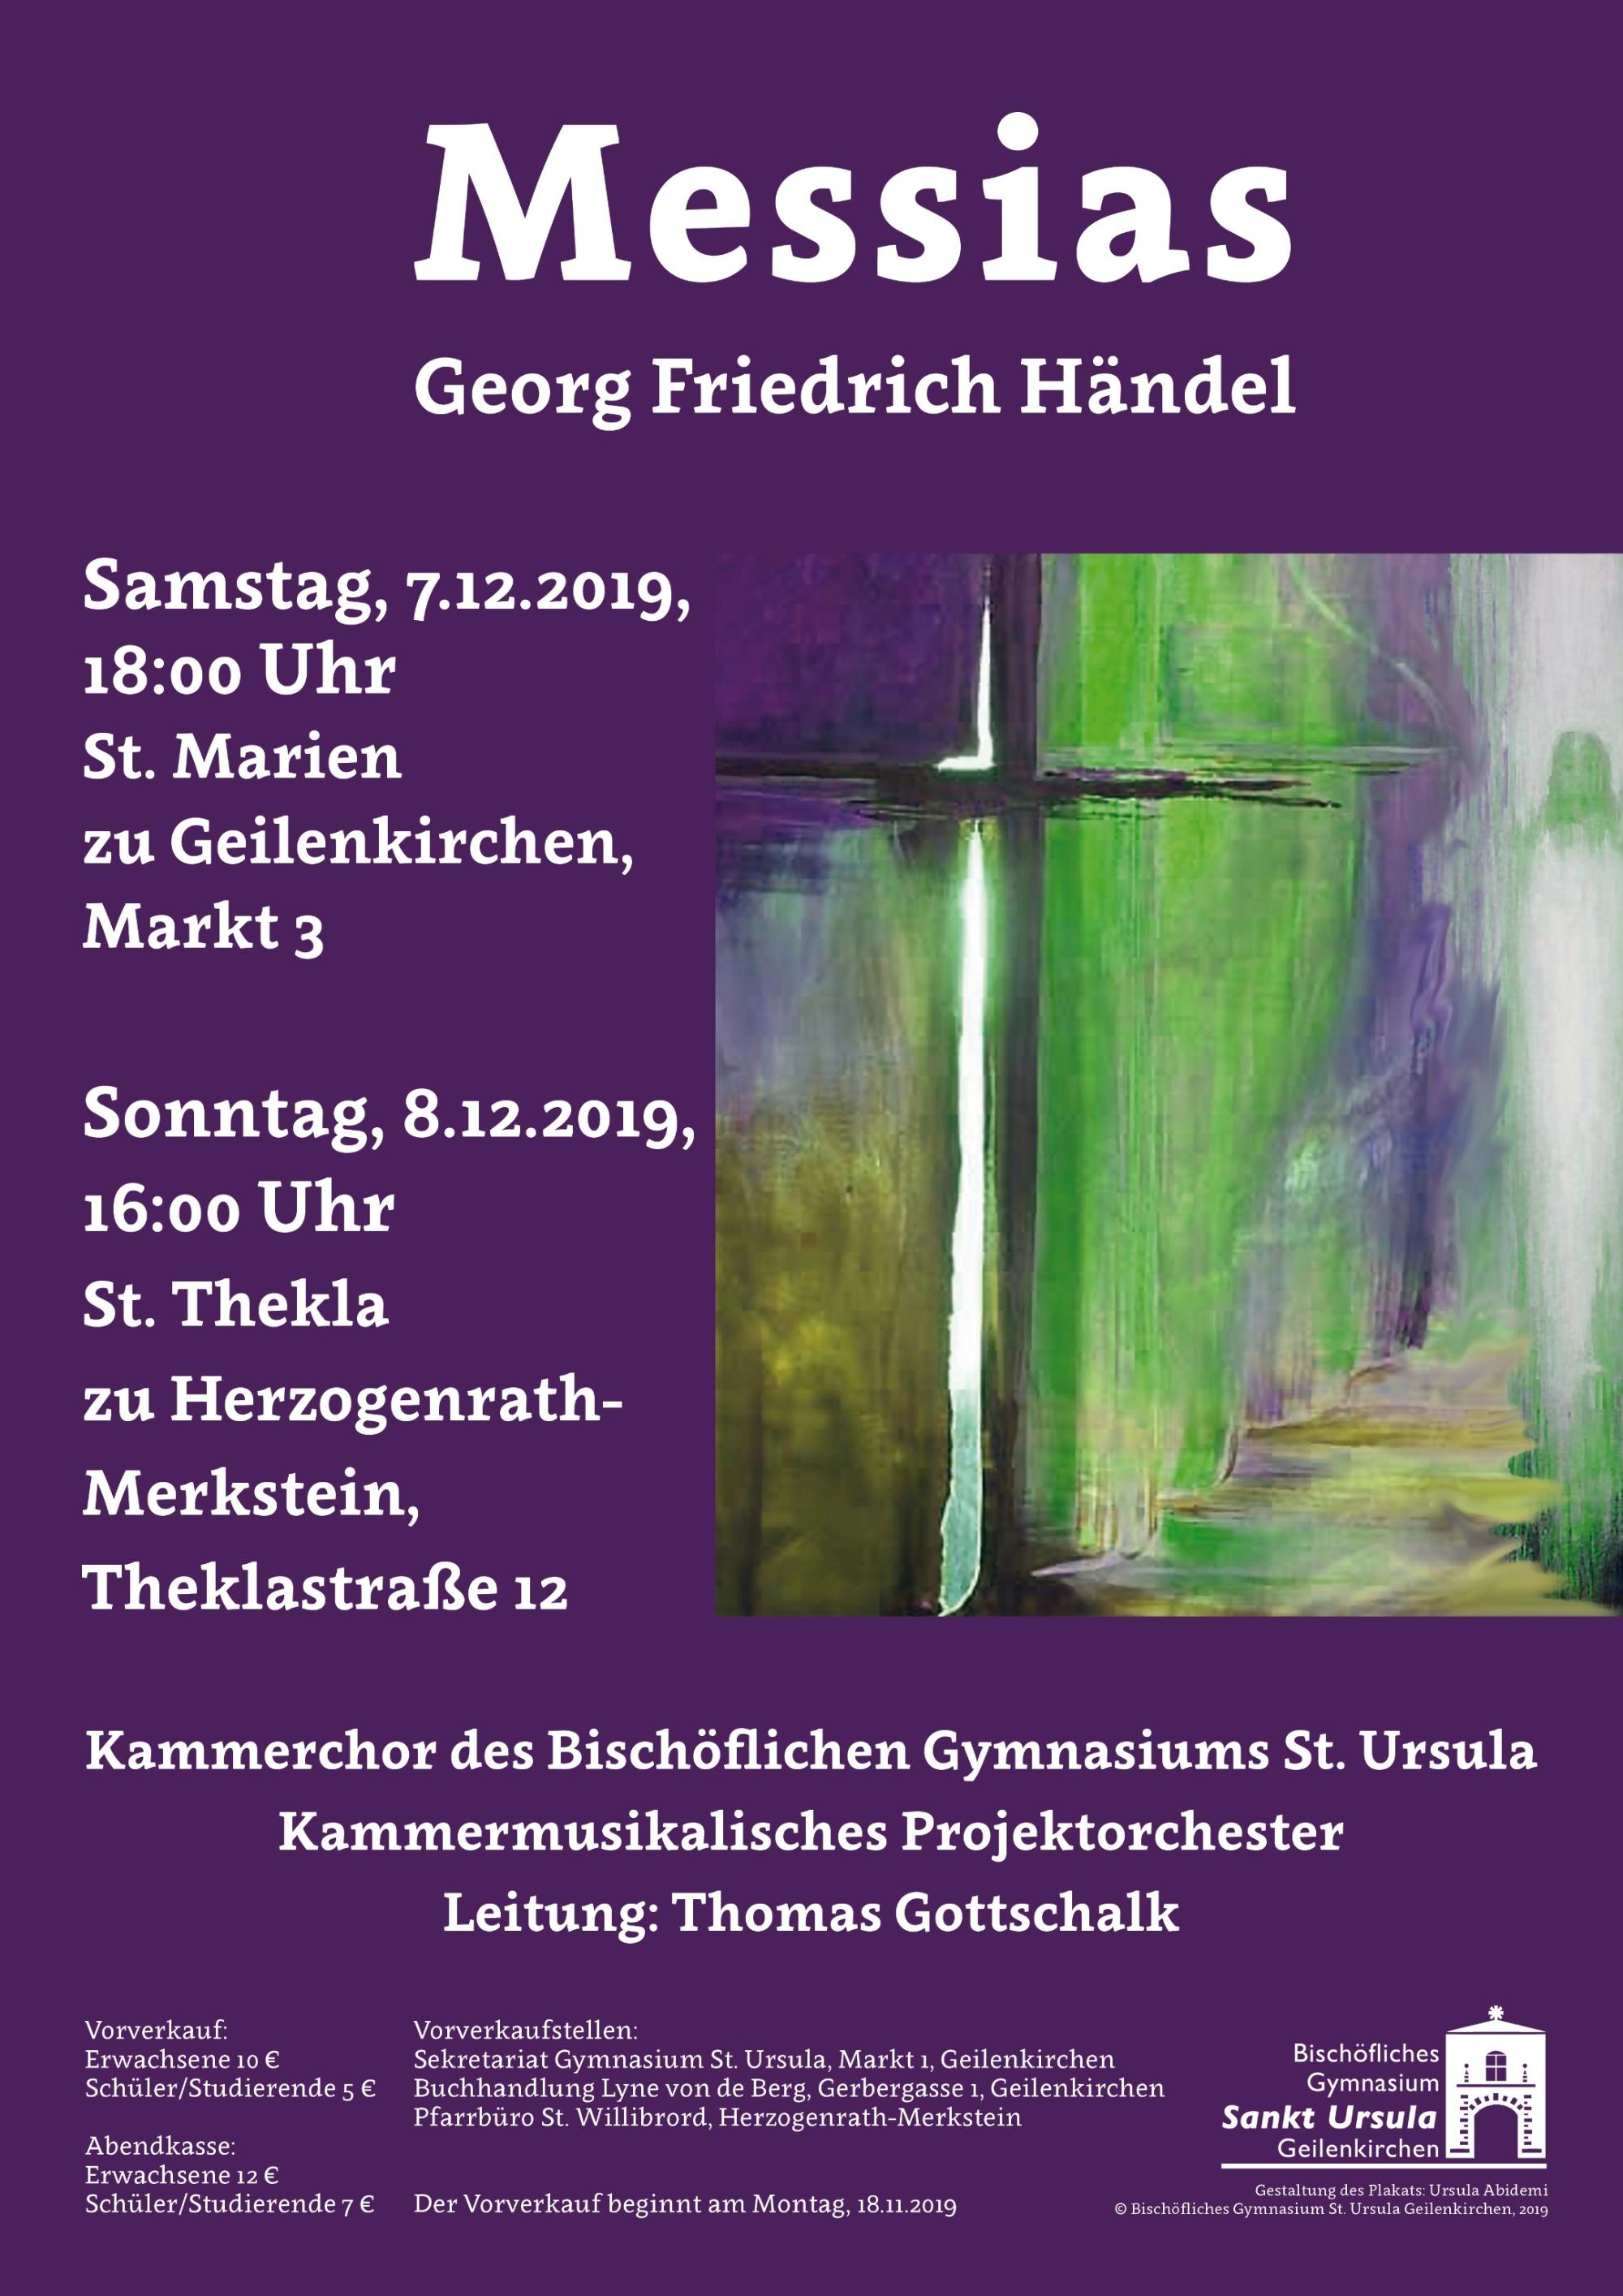 G. F. Händel - Messias: Plakat zu den Aufführungen